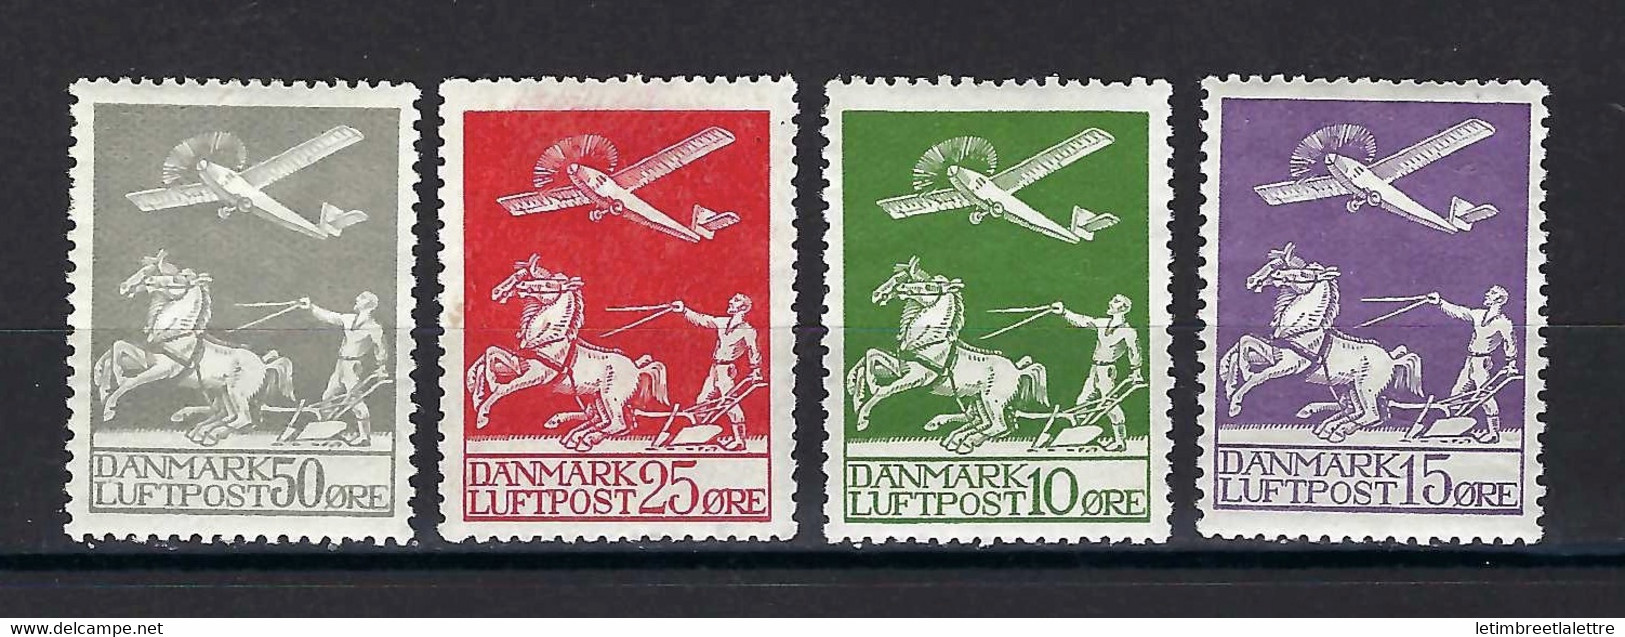 ⭐ Danemark - Poste Aérienne - YT N° 1 à 4 *  - Neuf Avec Charnière - 1925 / 1930 ⭐ - Luftpost